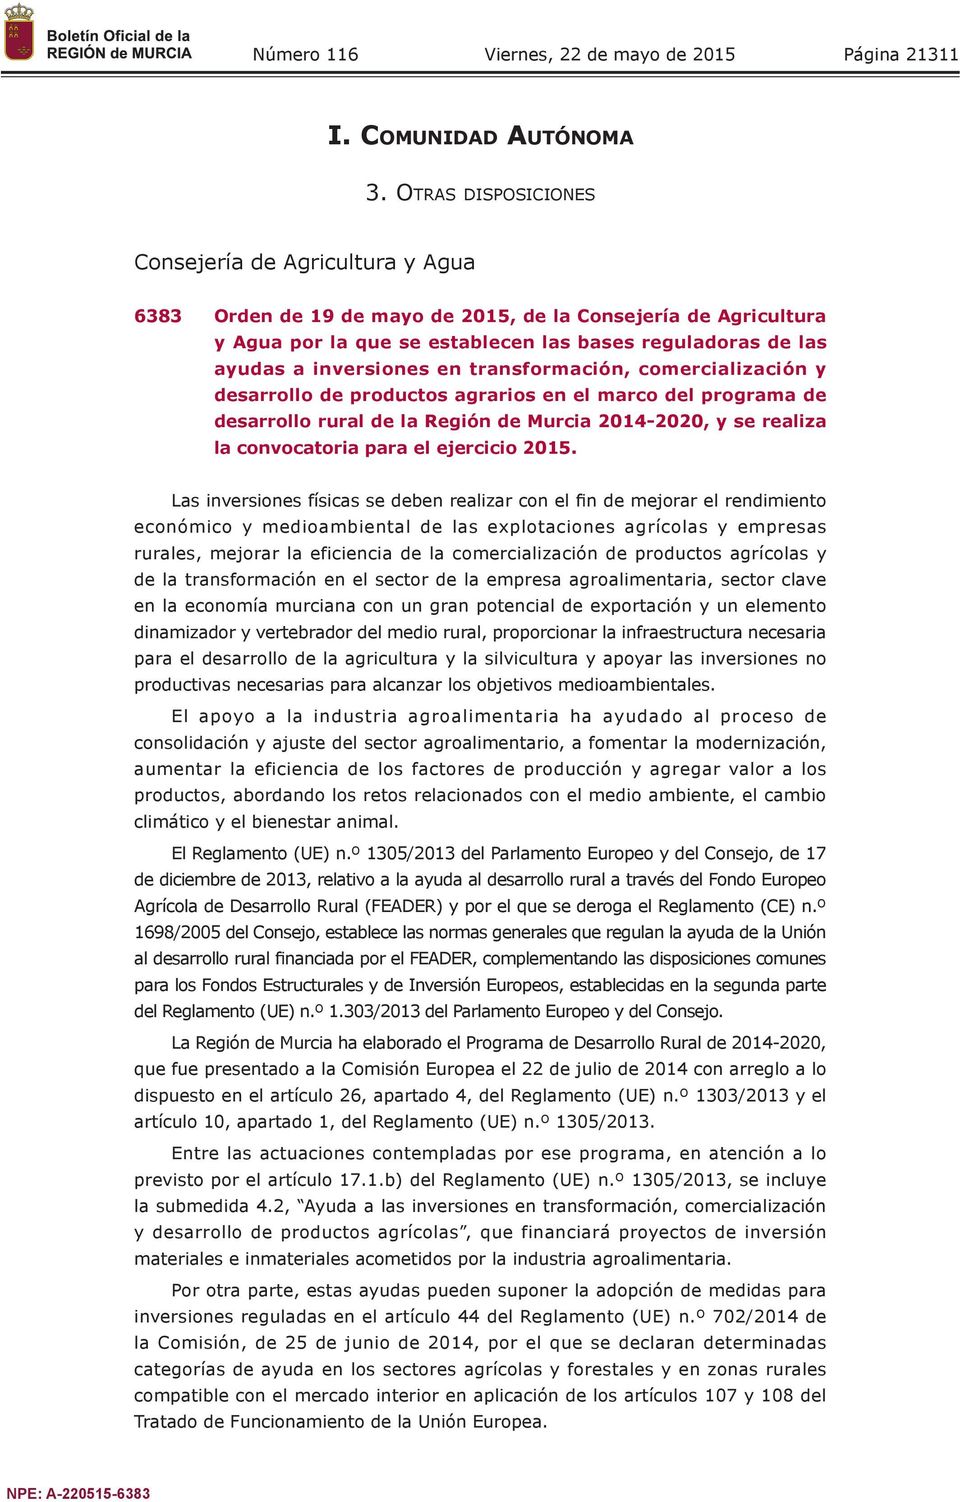 inversiones en transformación, comercialización y desarrollo de productos agrarios en el marco del programa de desarrollo rural de la Región de Murcia 2014-2020, y se realiza la convocatoria para el